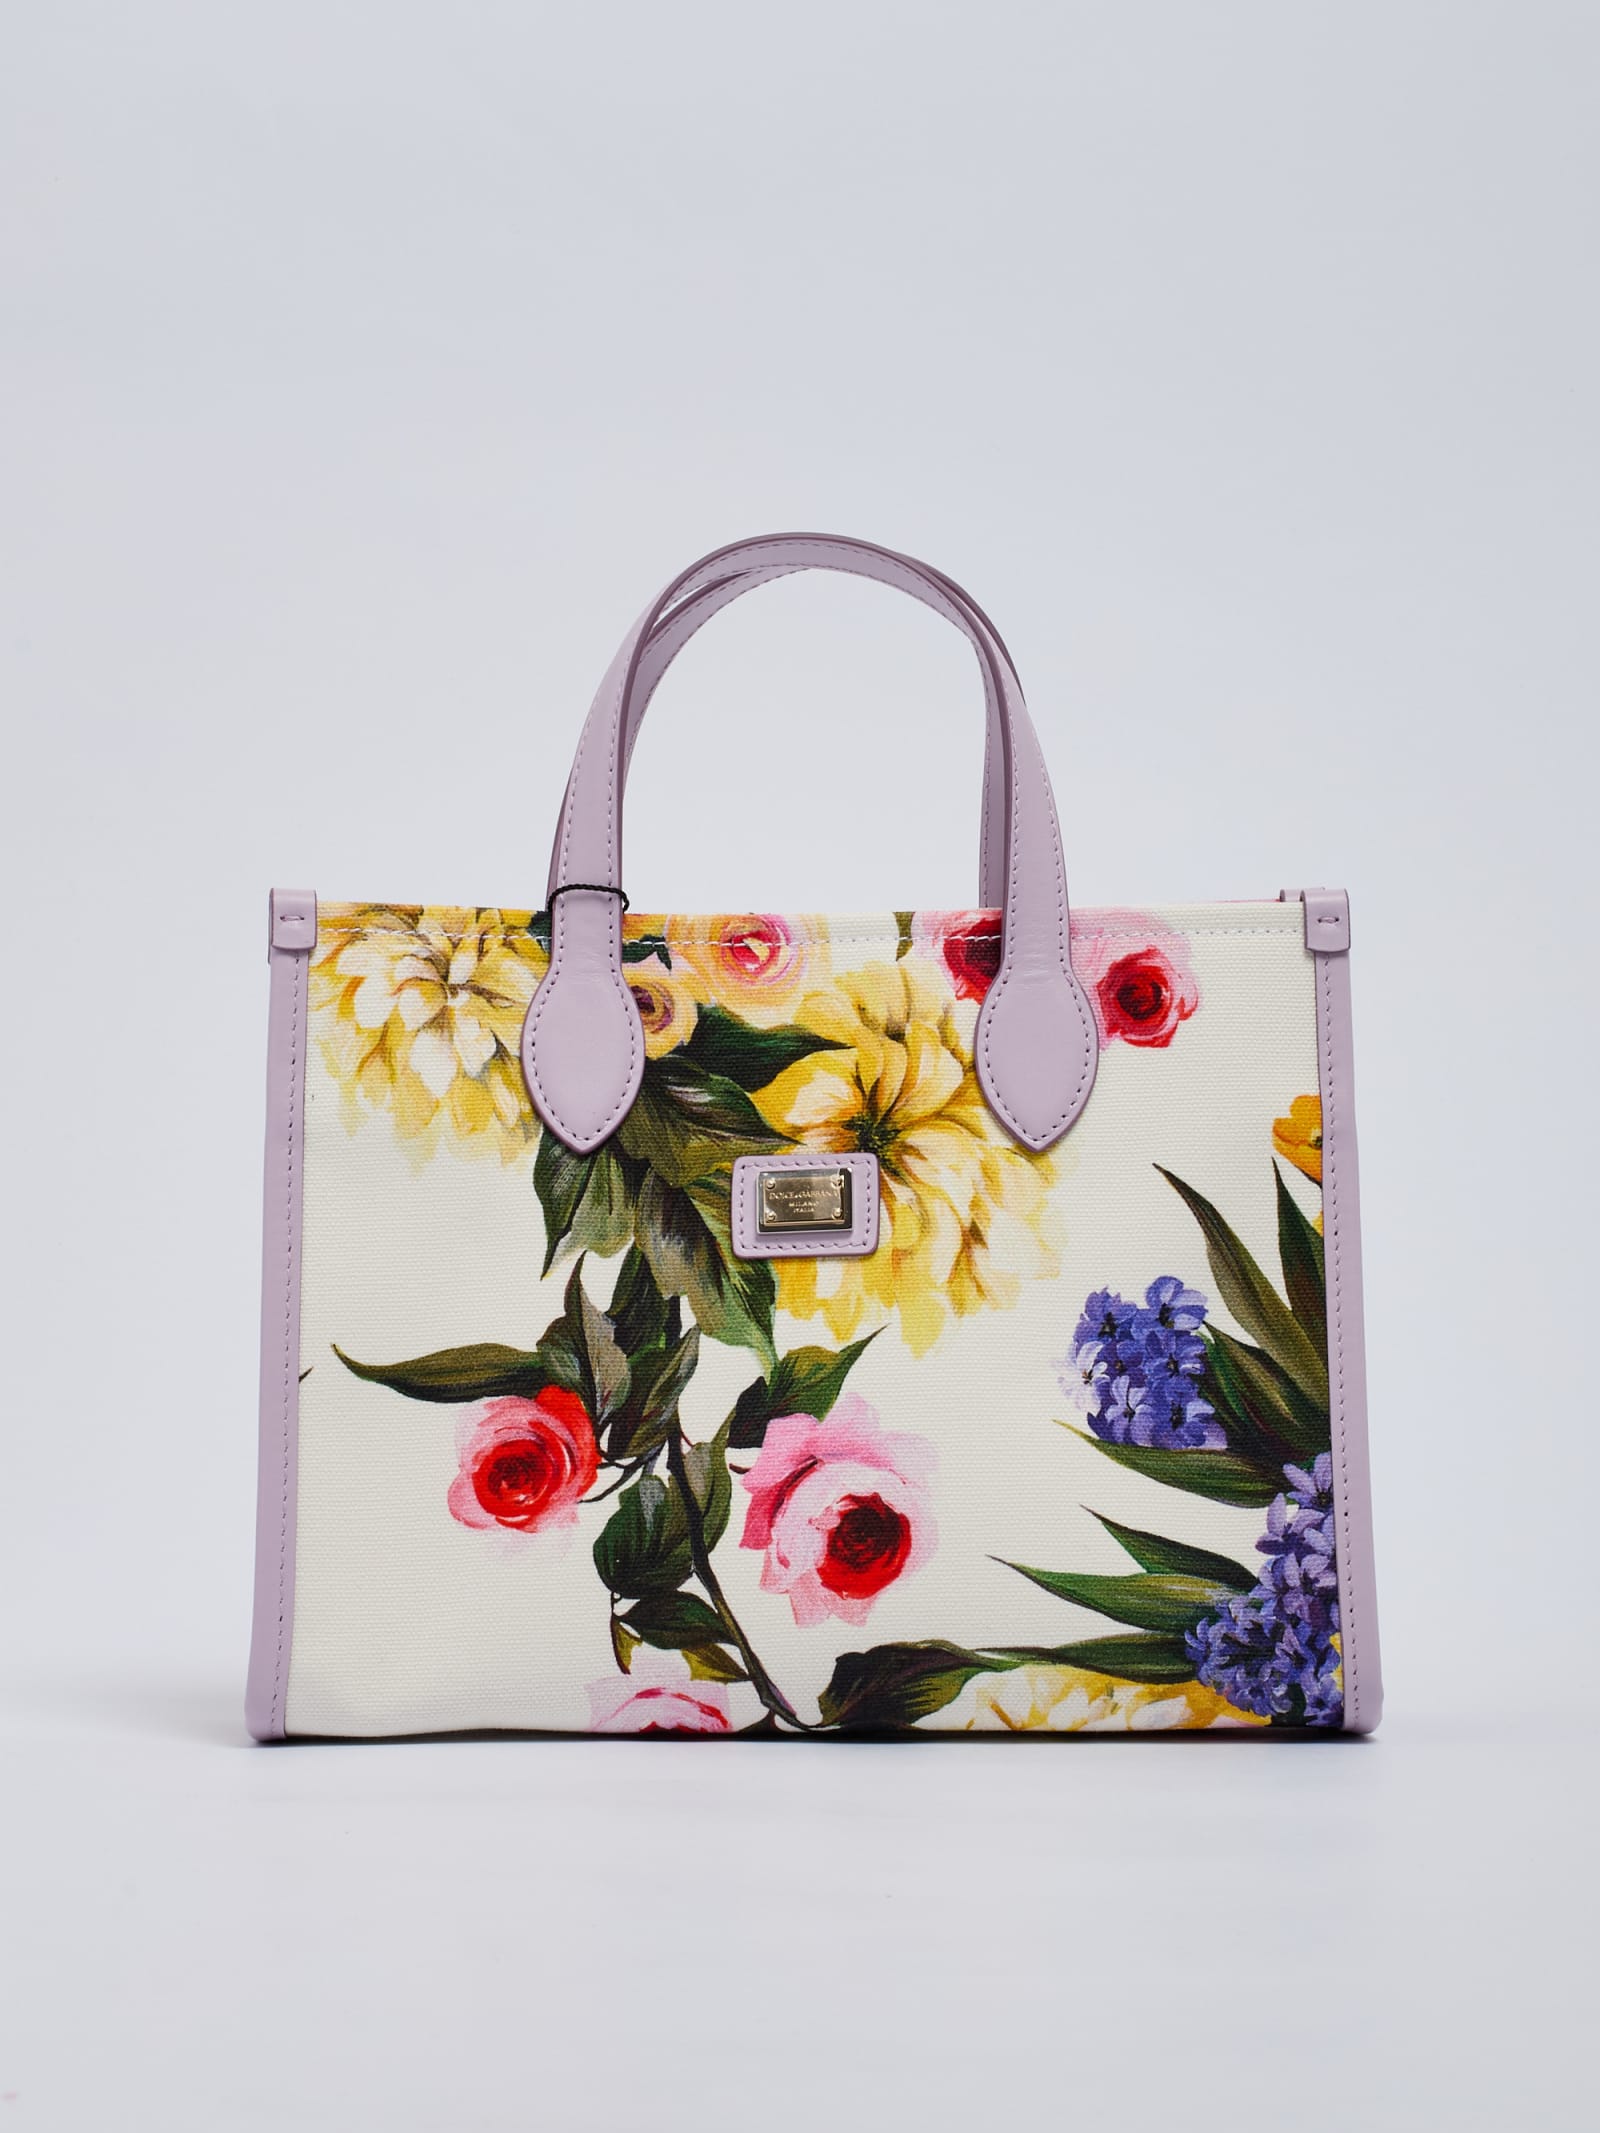 Dolce & Gabbana Handbag Shopping Bag